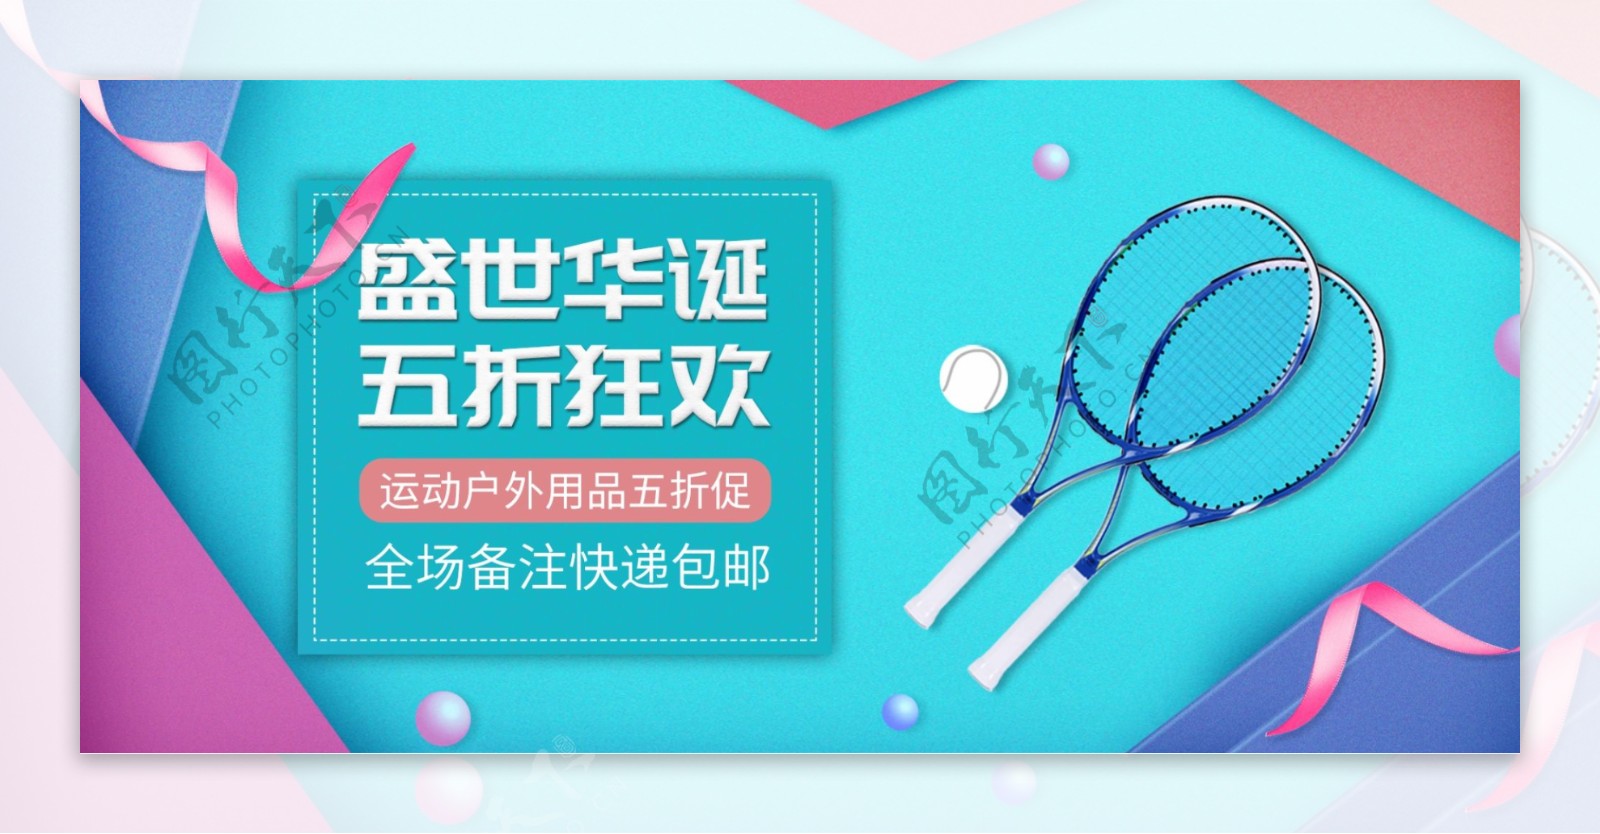 国庆全球购网球户外用品促销banner